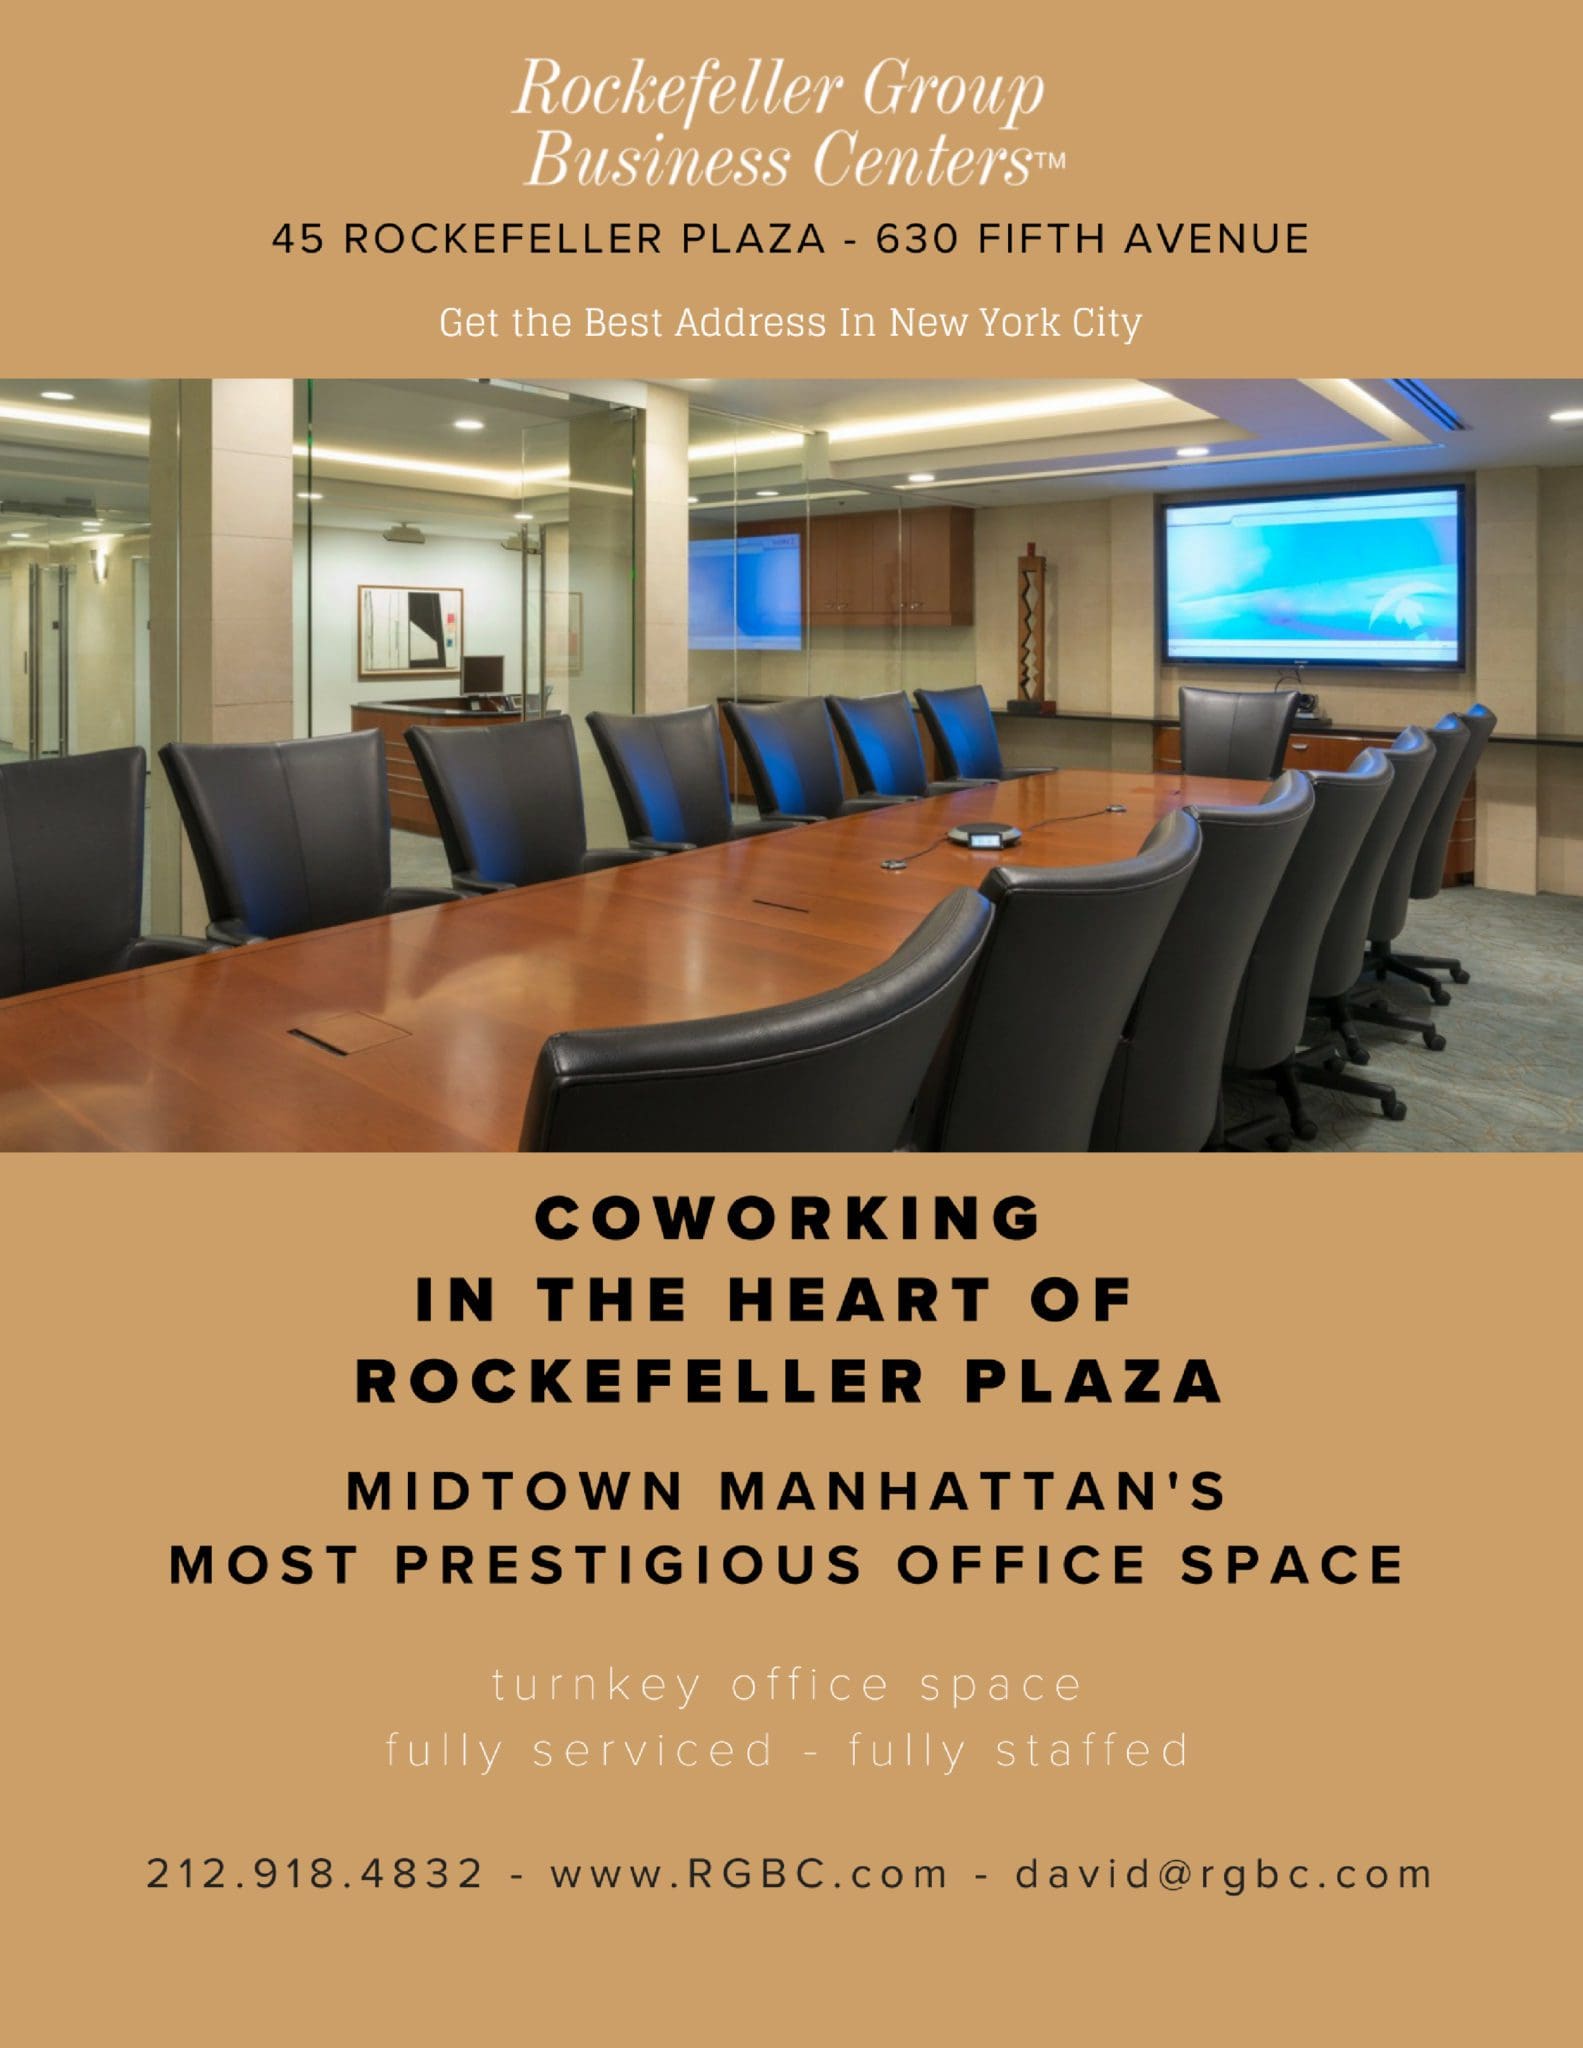 Rockefeller Plaza Meeting Rooms